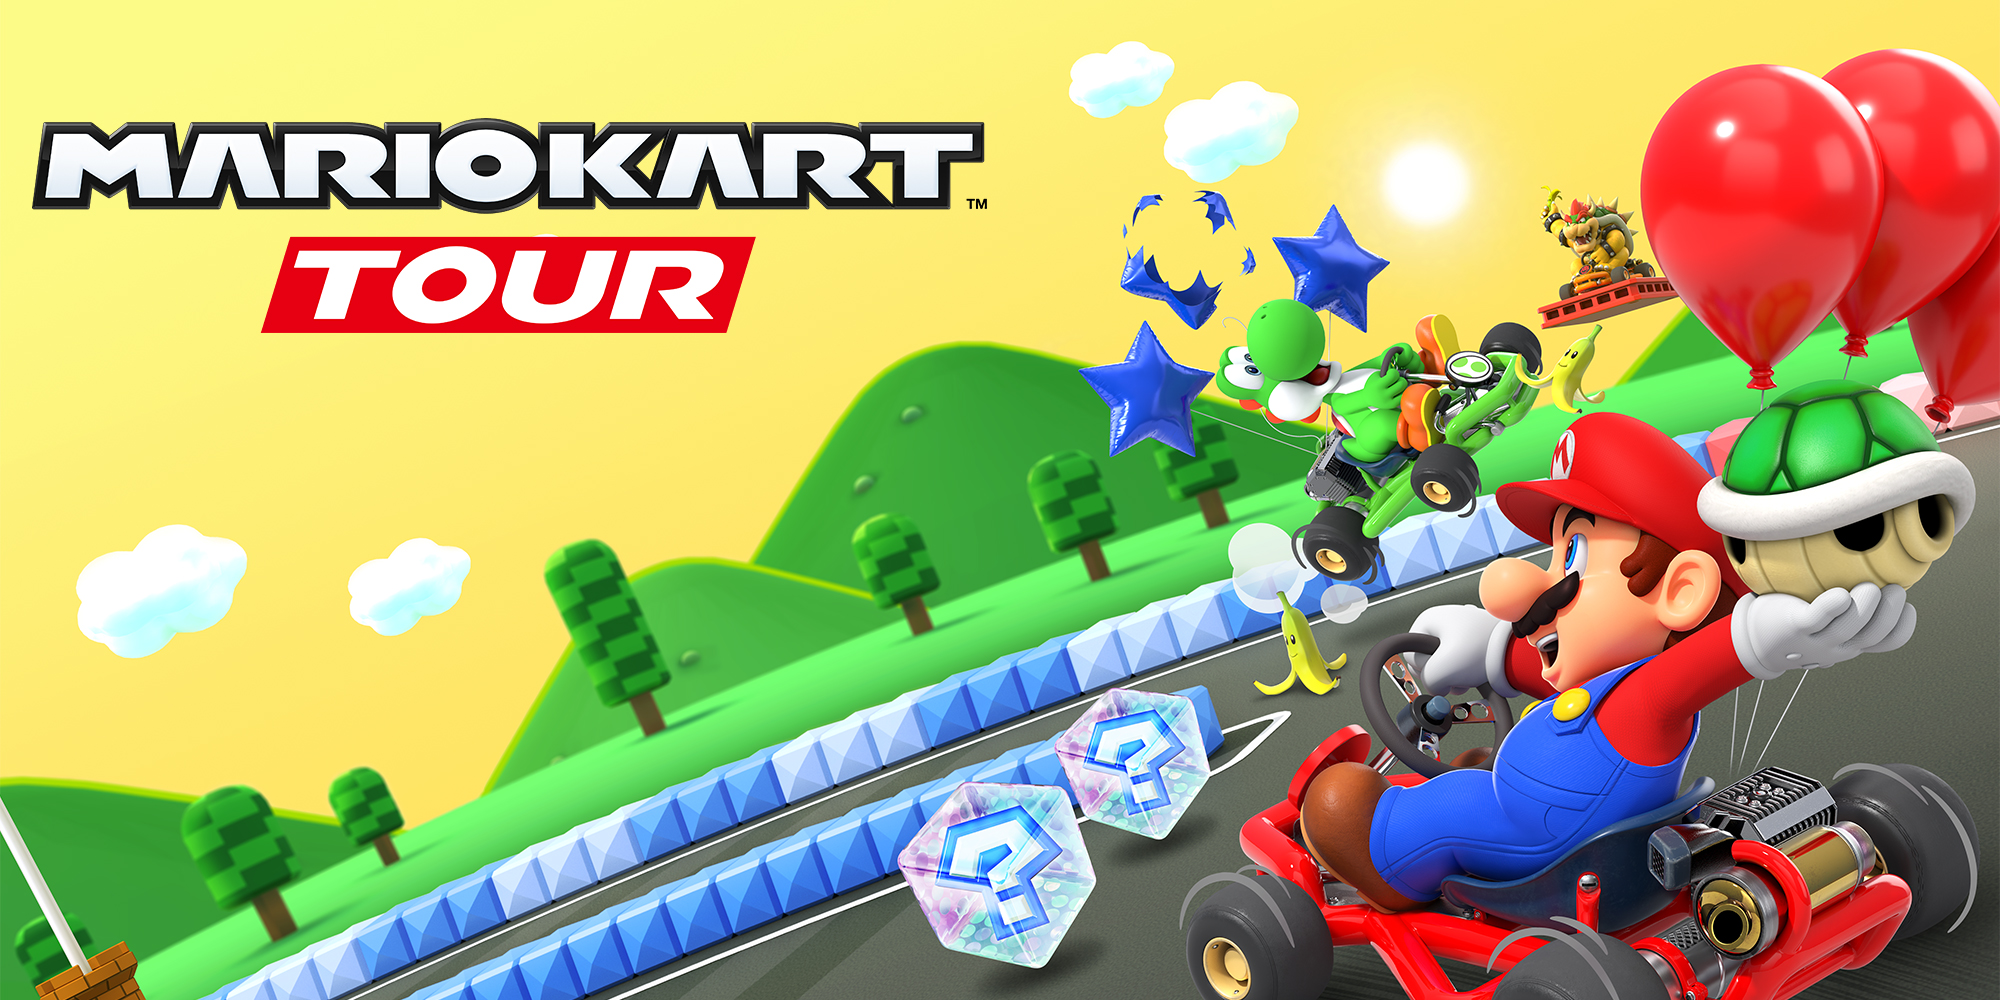 Prepara-te para acelerar pelo mundo inteiro em Mario Kart Tour, disponível a 25 de setembro!